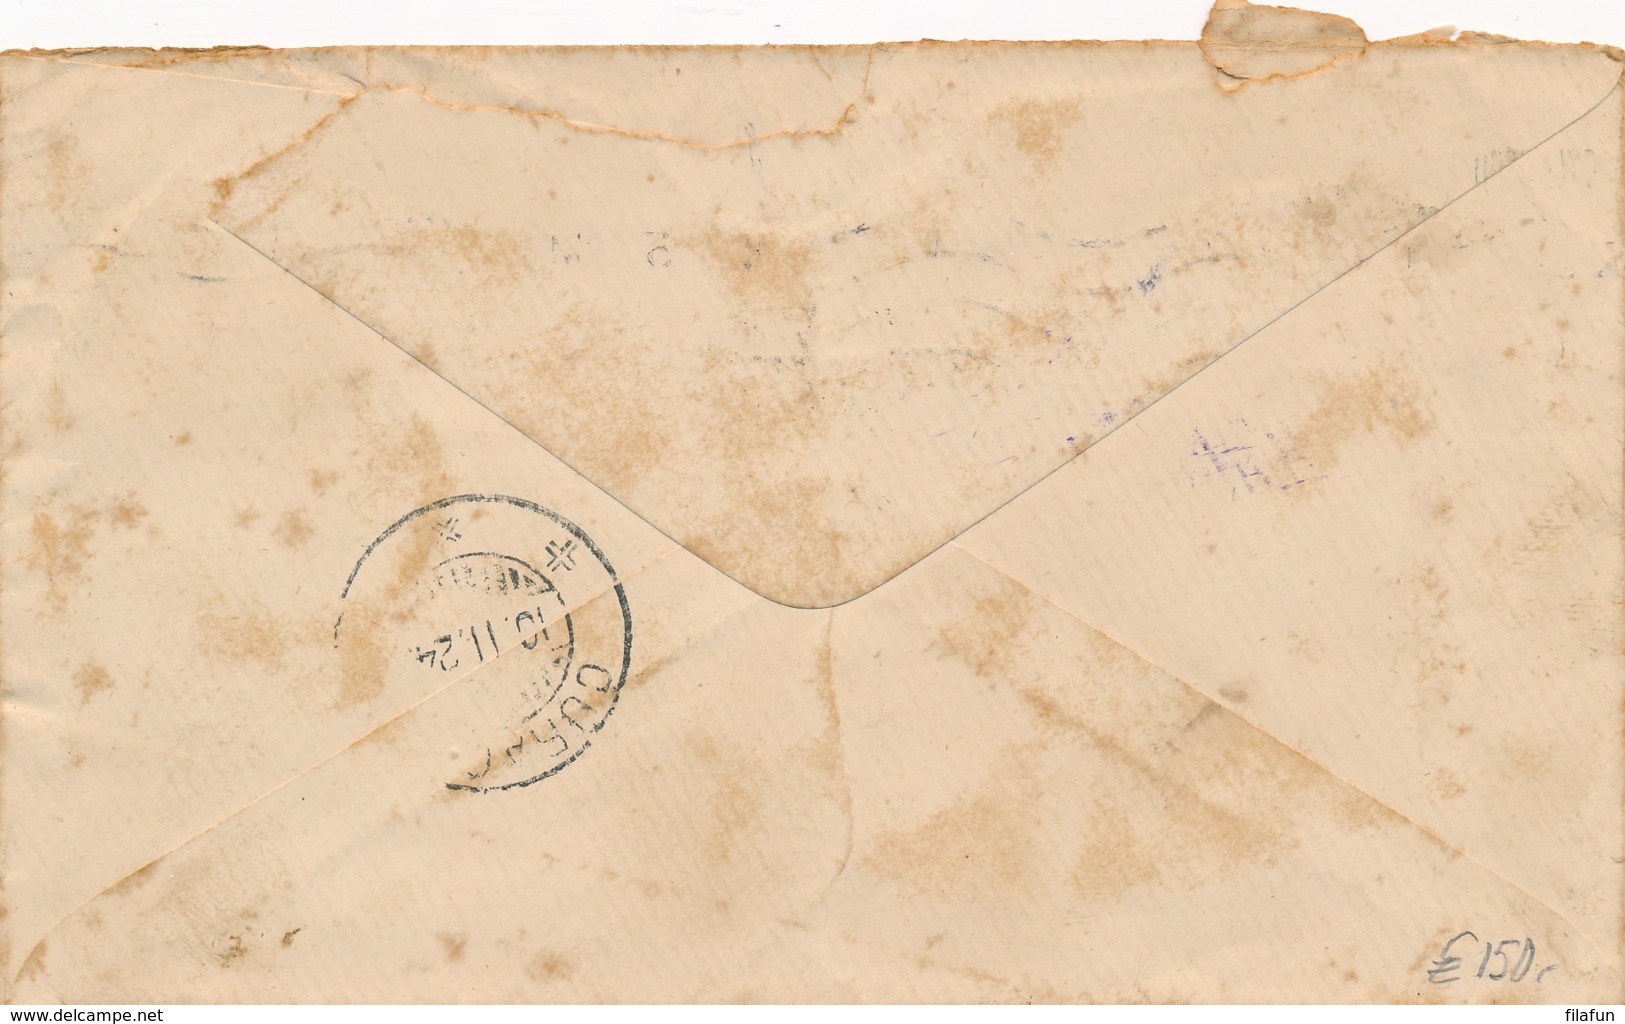 Curacao - 1924 - 2,5 & 15 Cent Port / Postage Due Op Inkomende Brief Van London / UK Naar Curacao - Curaçao, Nederlandse Antillen, Aruba